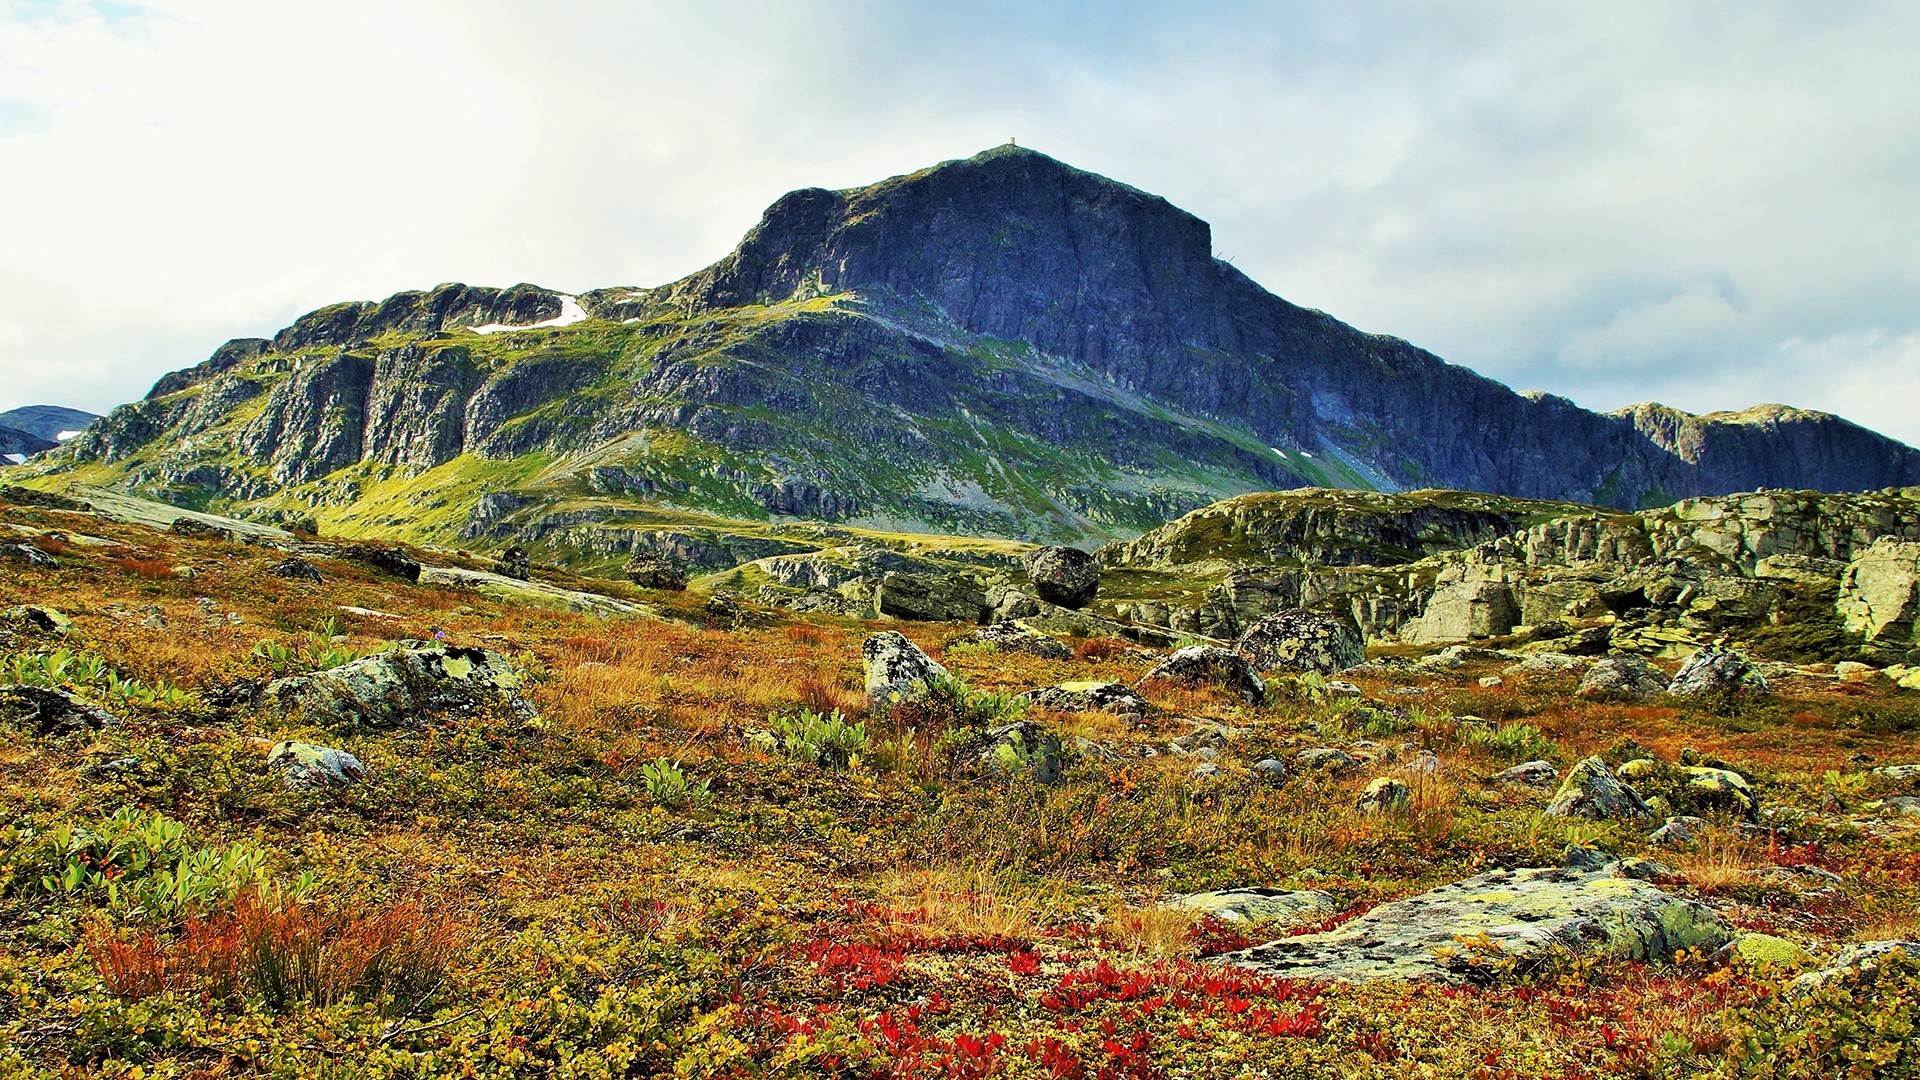 The mountain of Bitihorn in autumn.